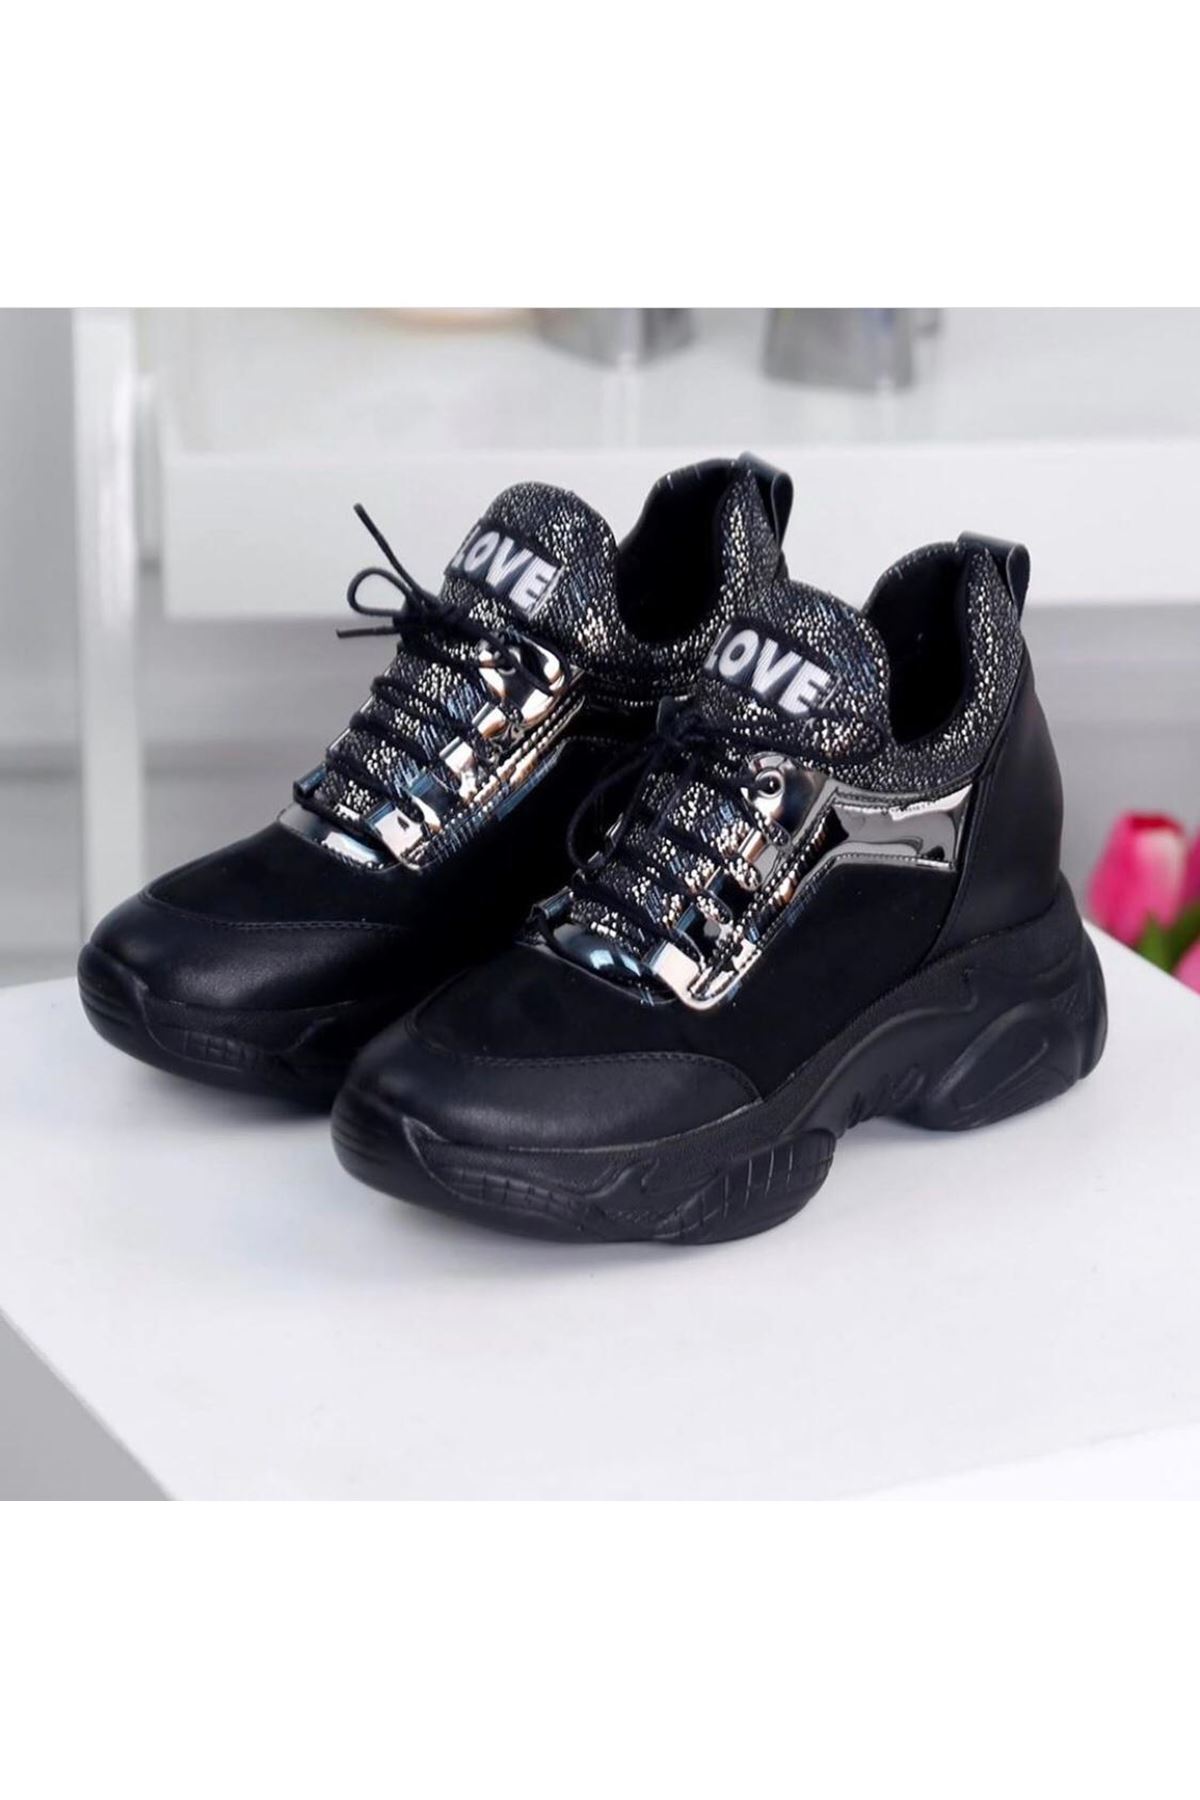 Rota Siyah Gizli Topuk Bayan Spor Ayakkabı